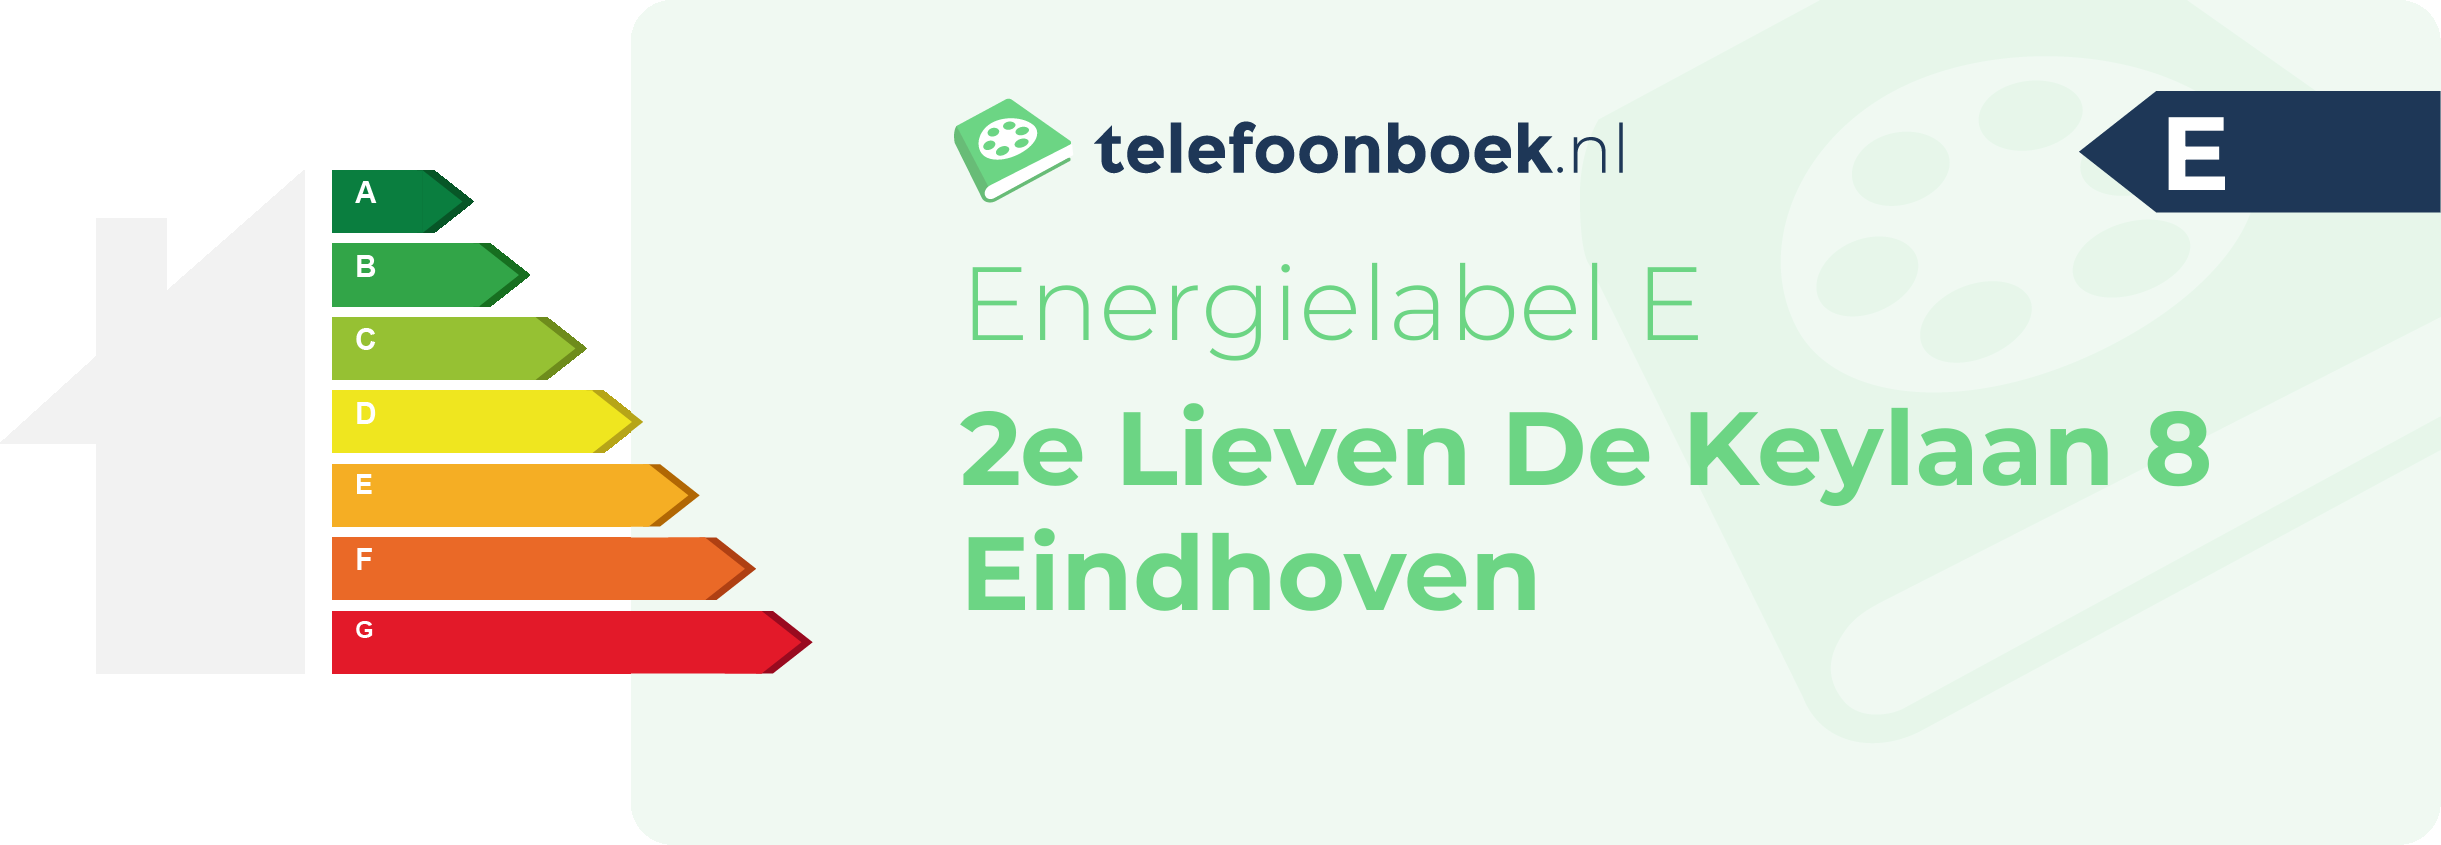 Energielabel 2e Lieven De Keylaan 8 Eindhoven